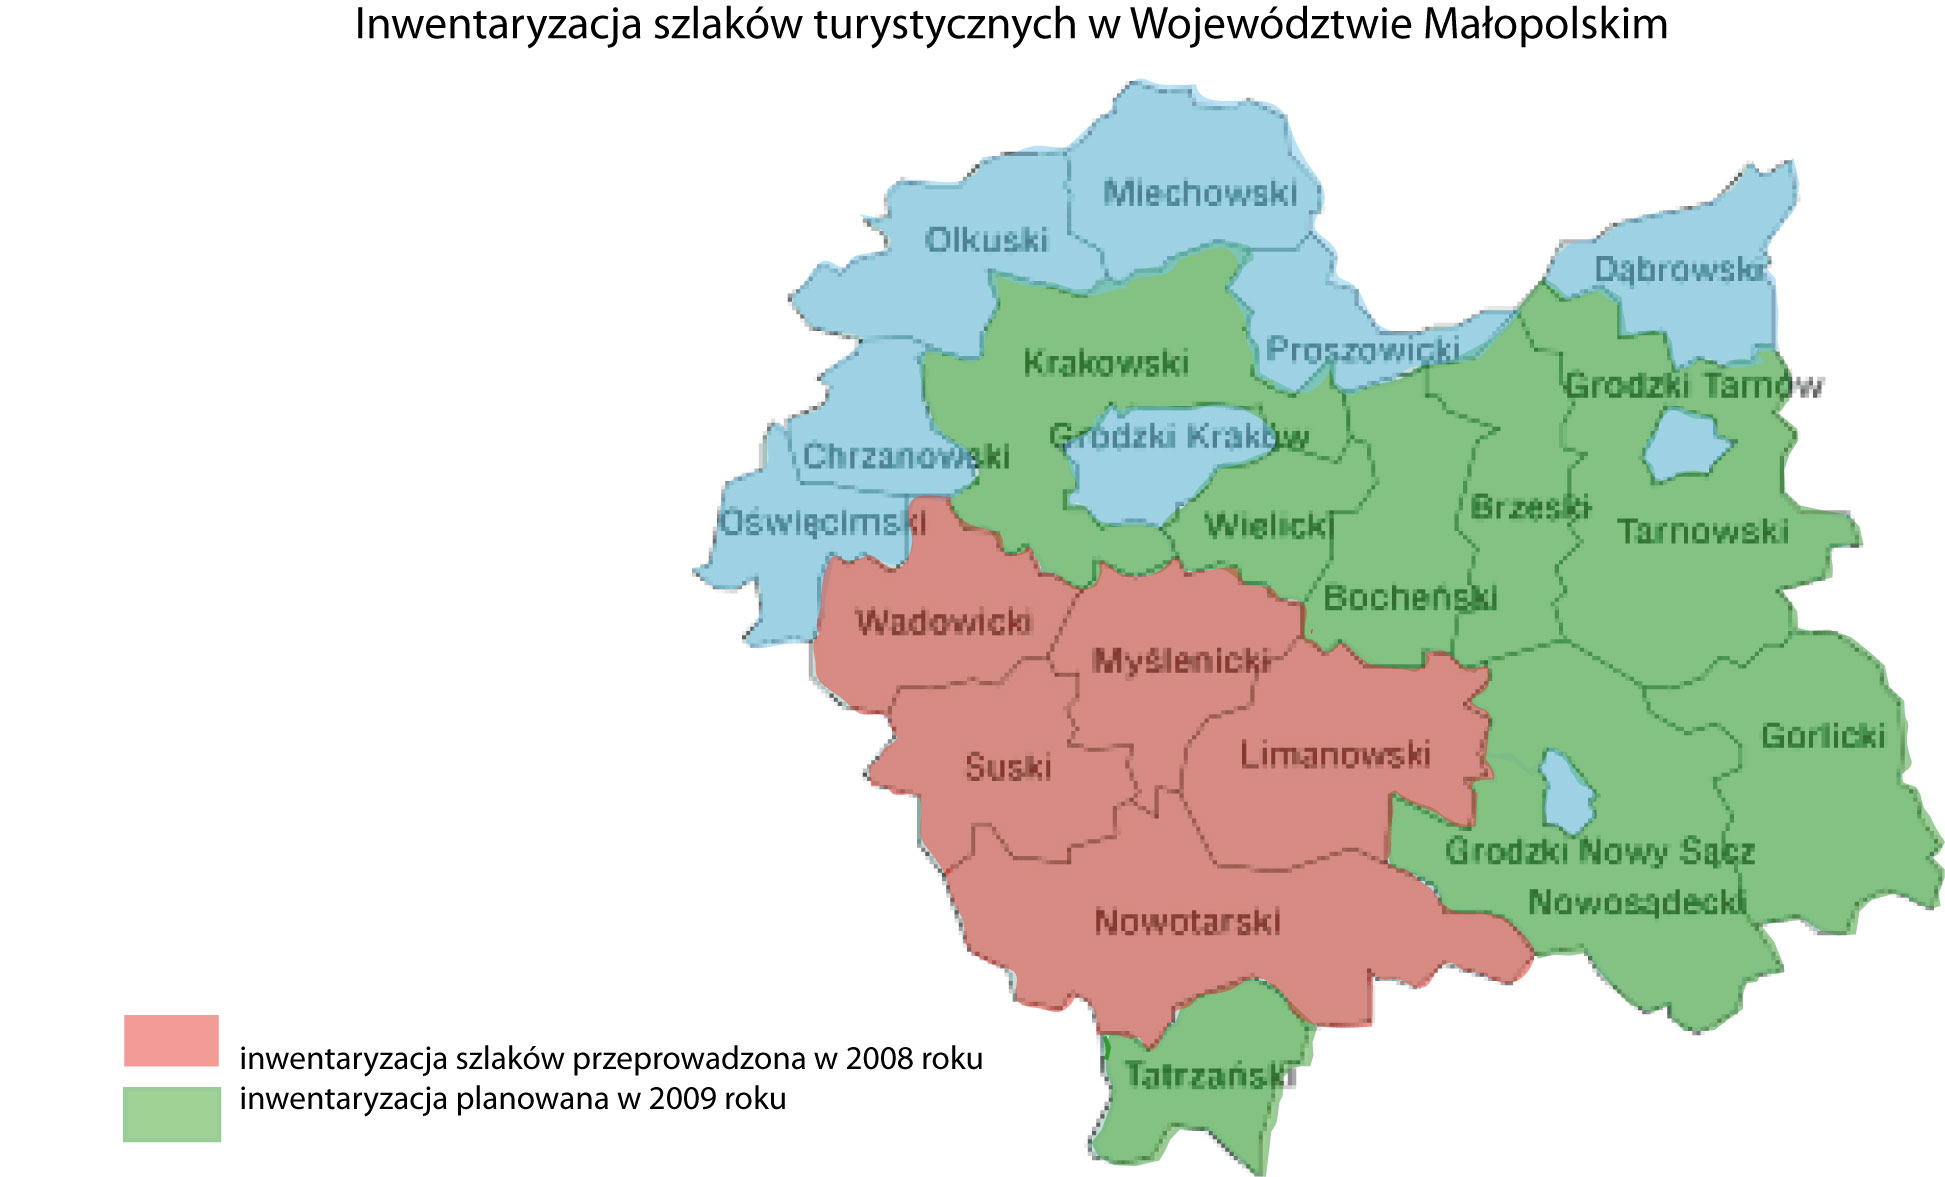 W 2009 roku zebrano dane w kolejnych siedmiu powiatach: krakowskim, wielickim, bocheńskim, brzeskim, tarnowskim, gorlickim, nowosądeckim i tatrzańskim.